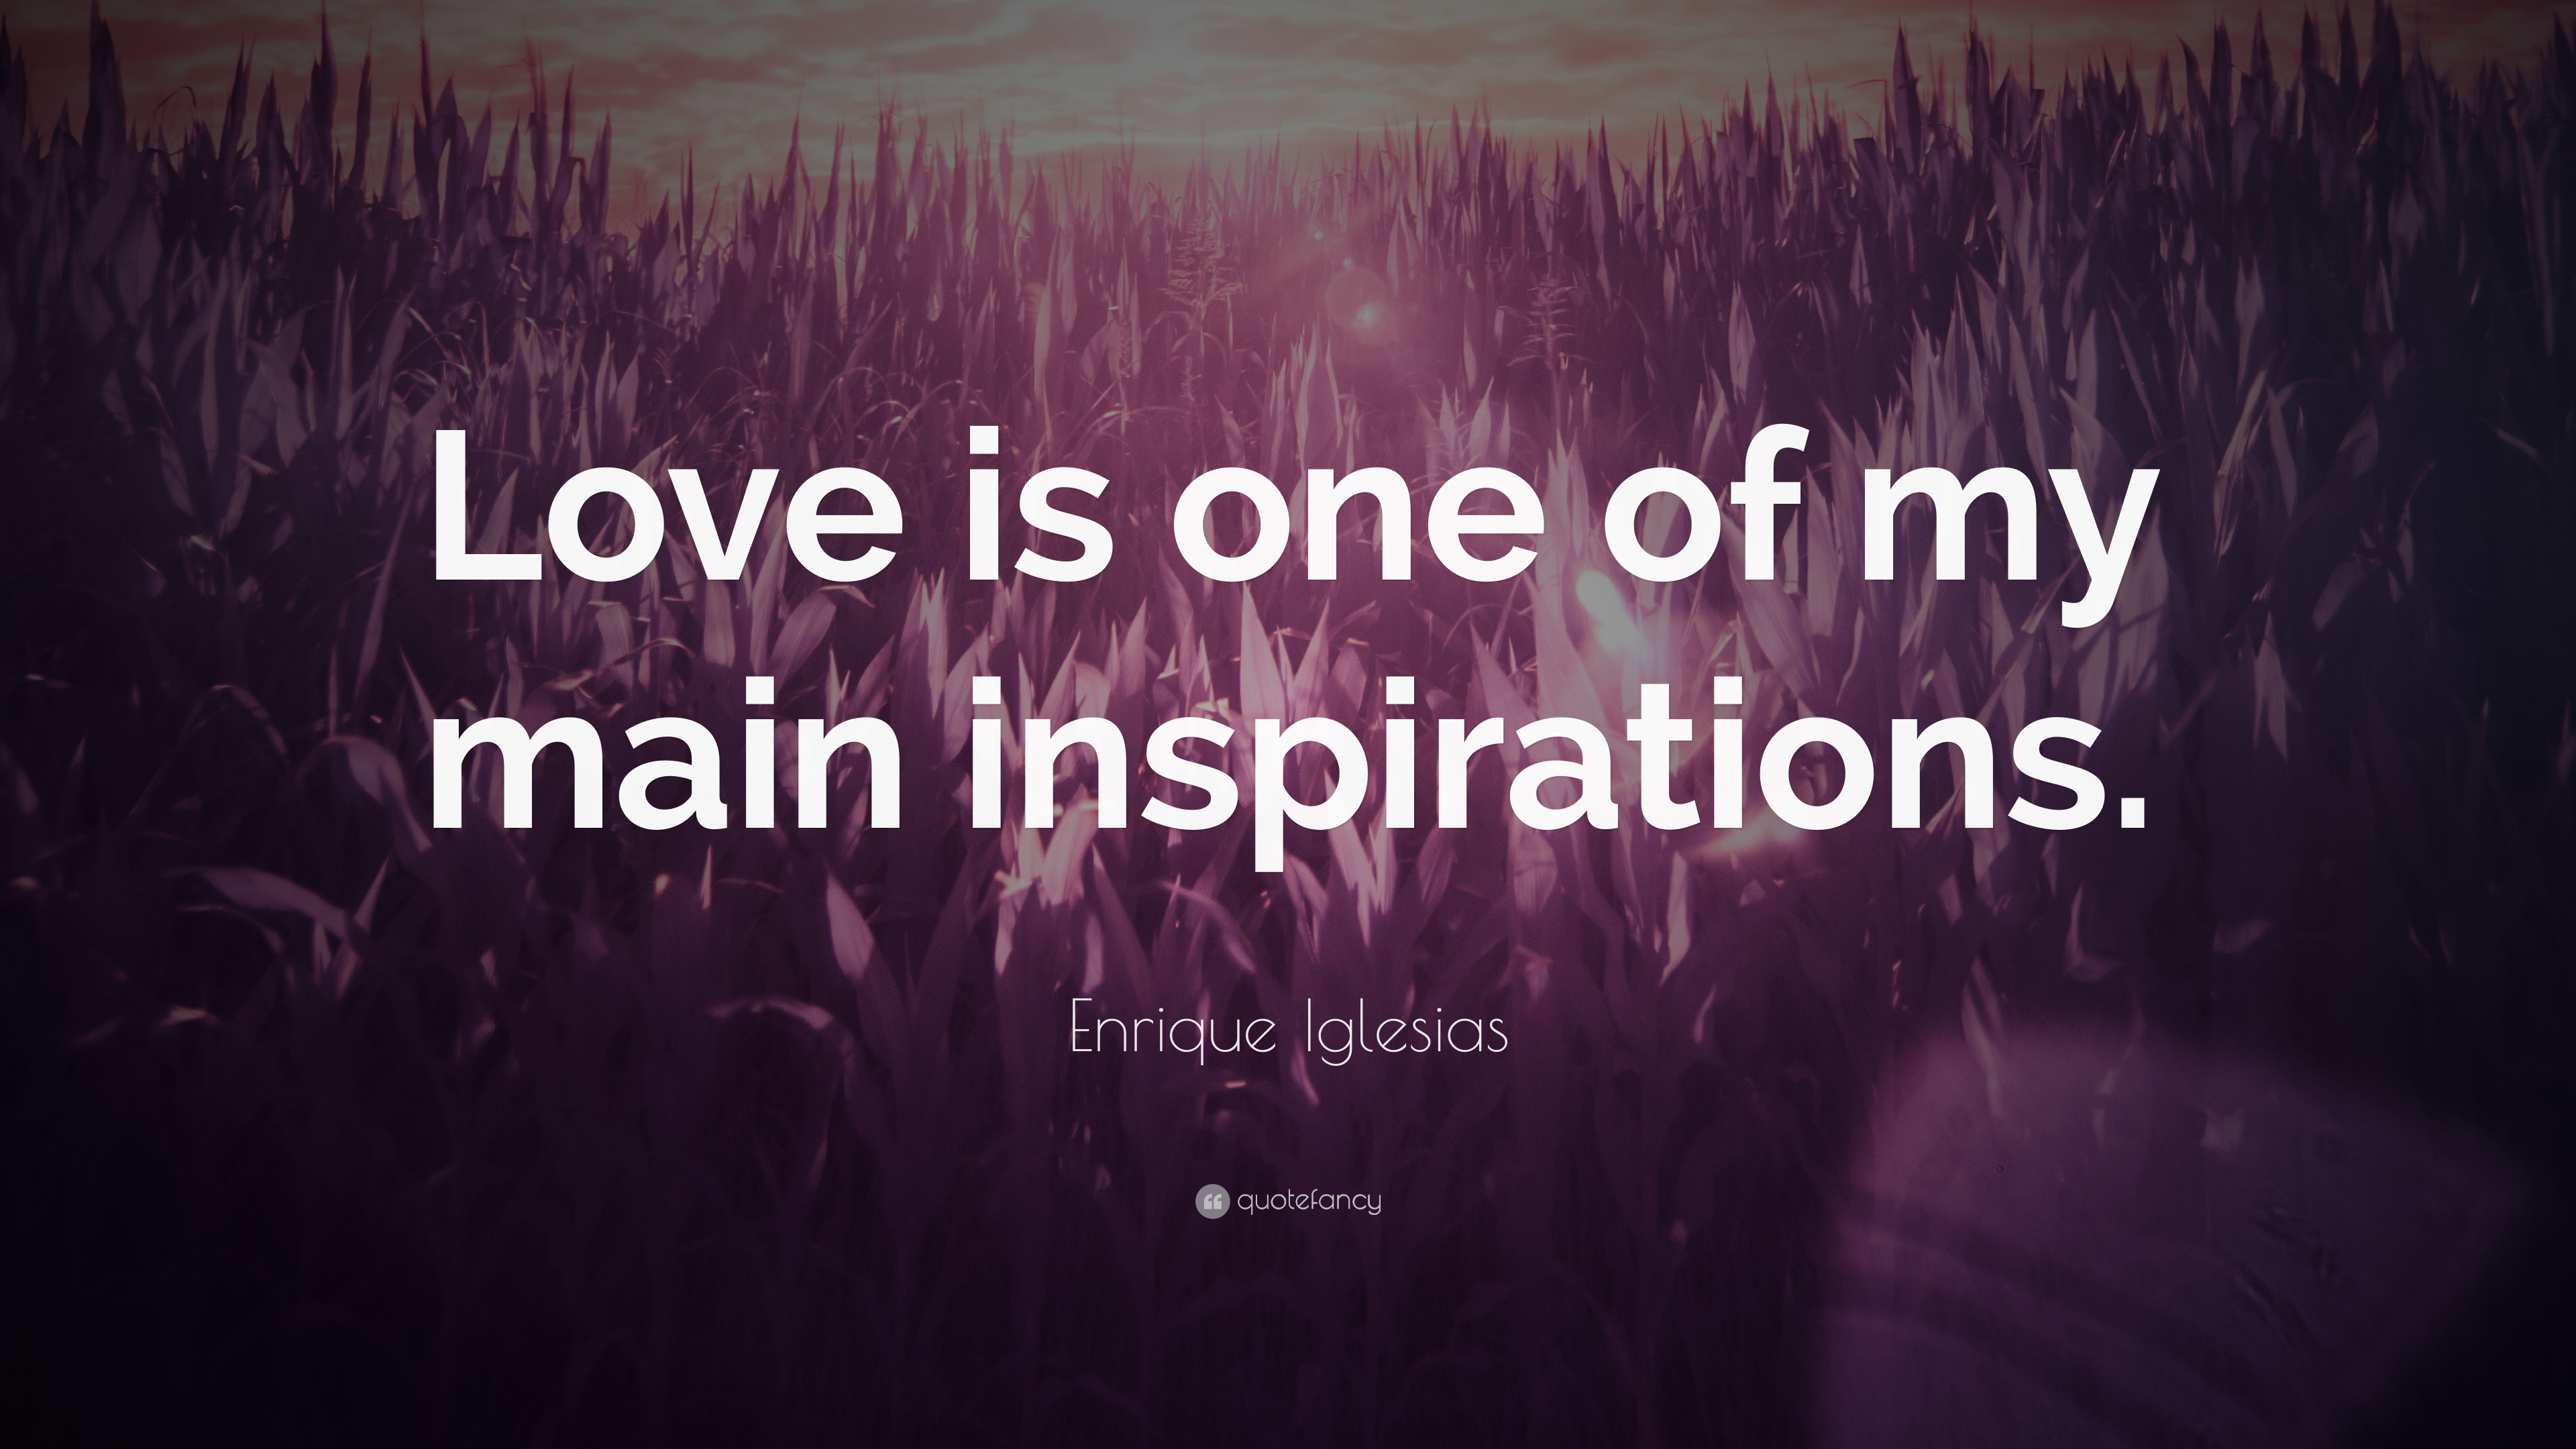 7 Enrique Iglesias Quotes About Love